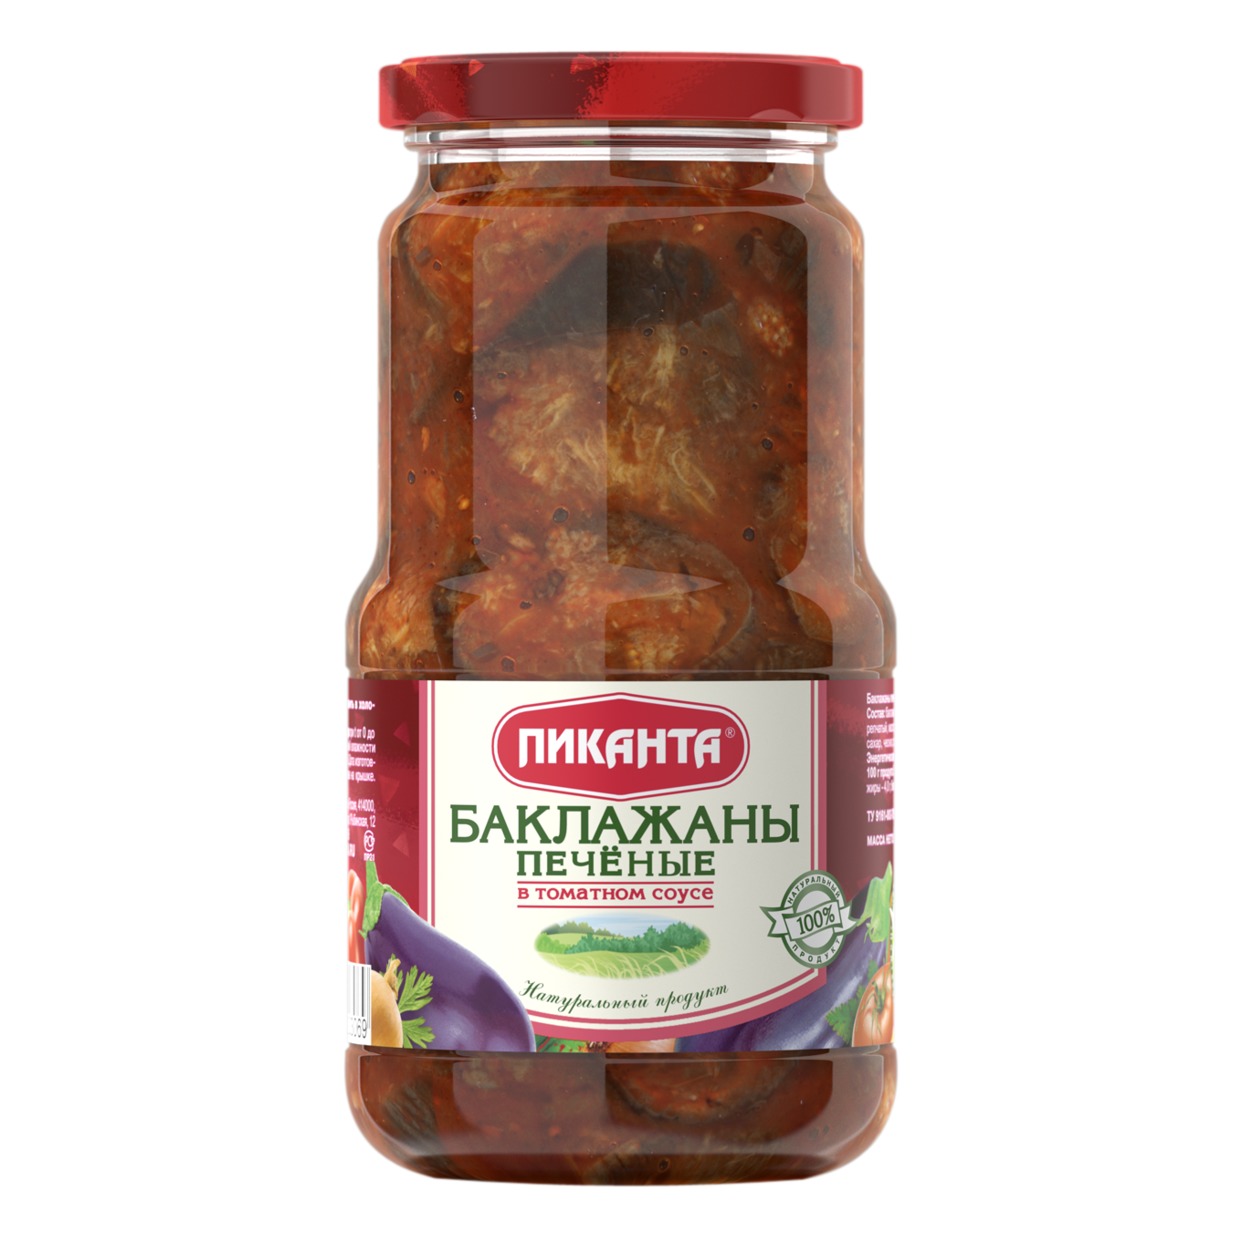 Баклажаны Пиканта, печеные в томатном соусе, 520 г по акции в Пятерочке